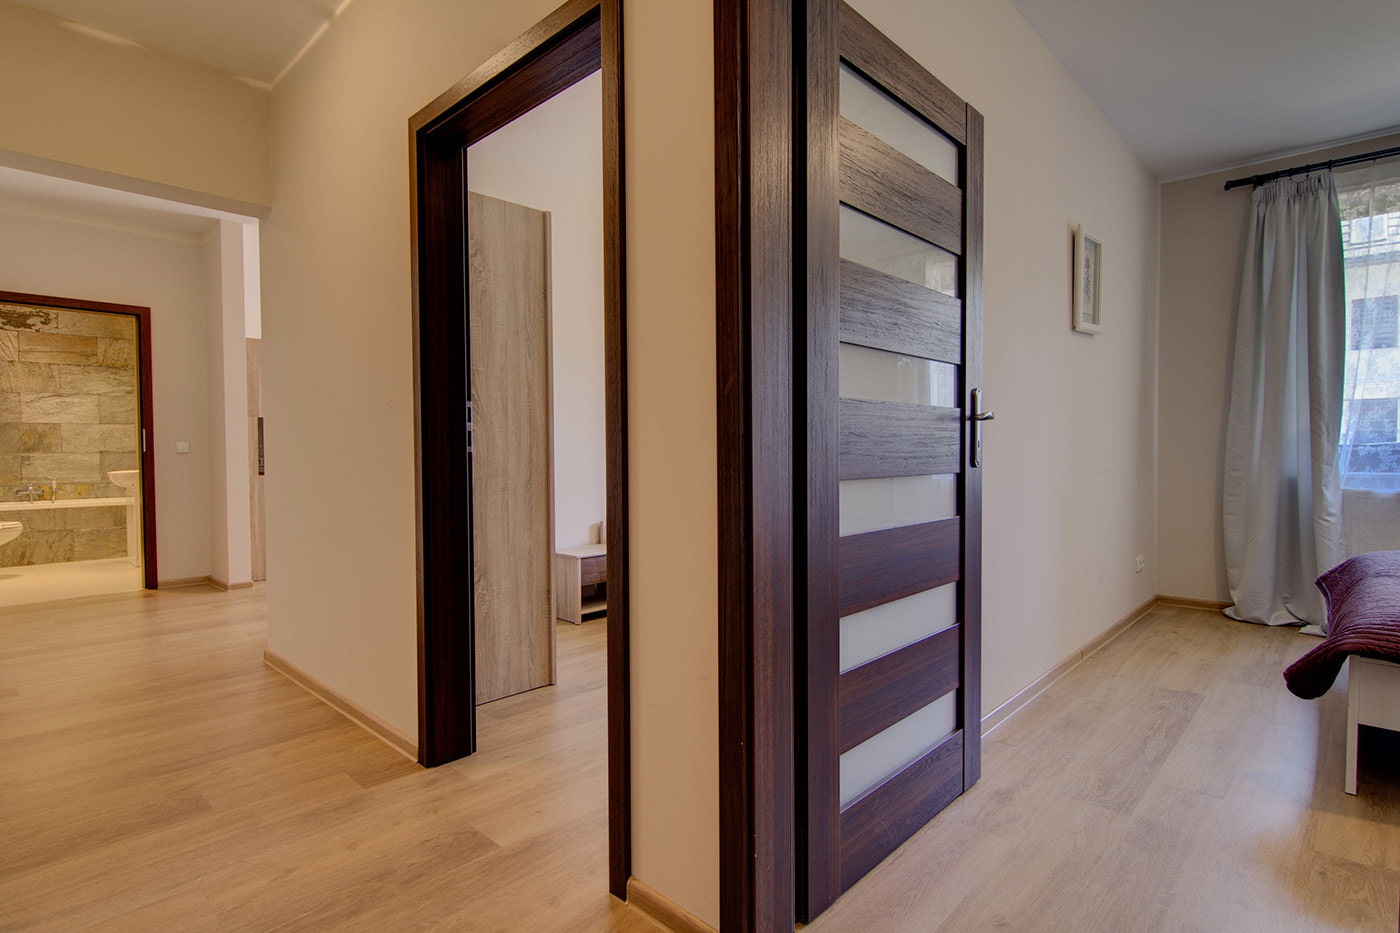 Межкомнатные двери в интерьере квартиры: материалы, цвет, фото